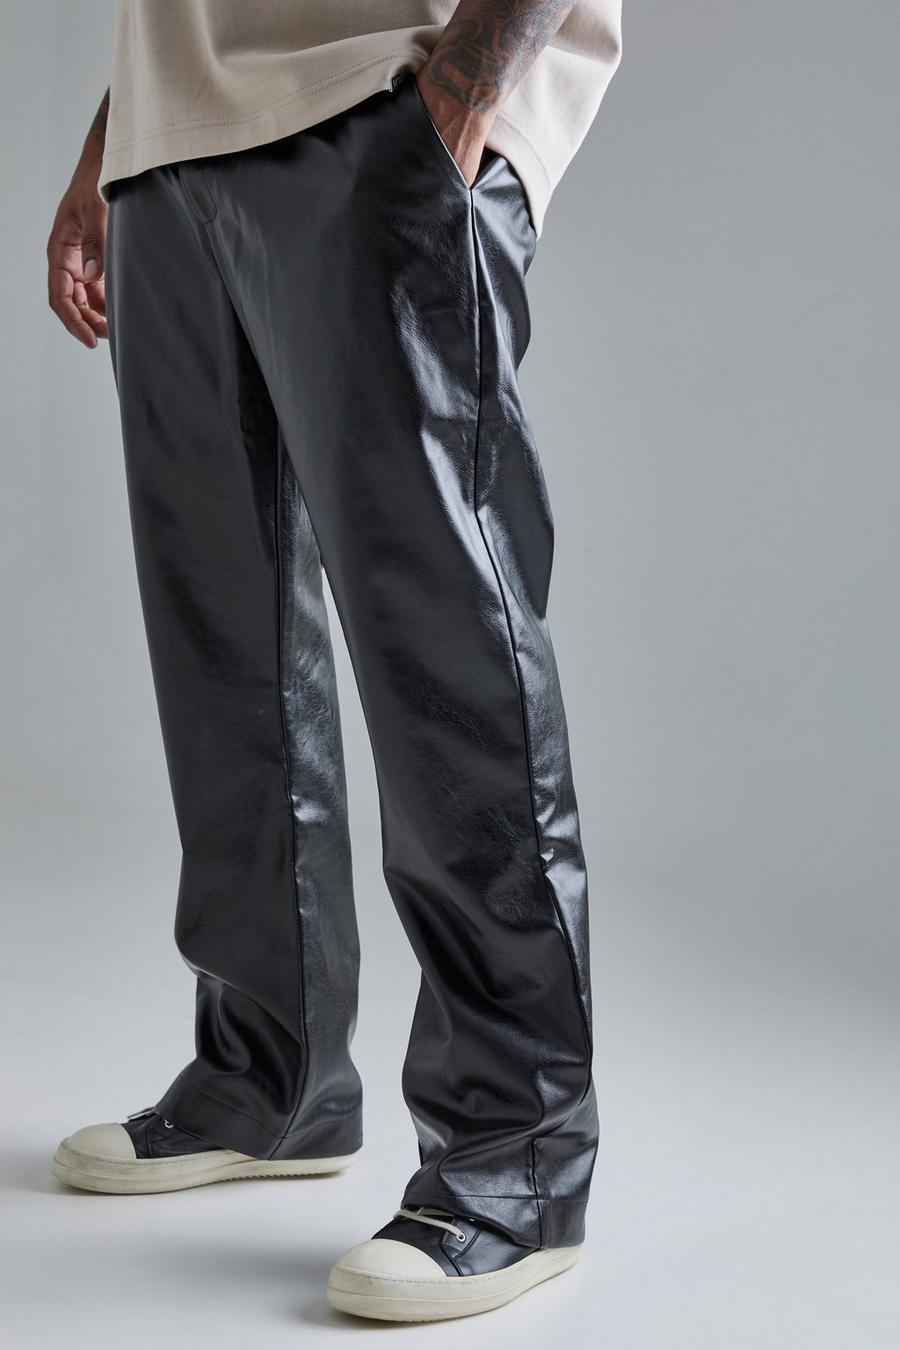 Pantaloni sartoriali Plus Size Slim Fit in PU, Black